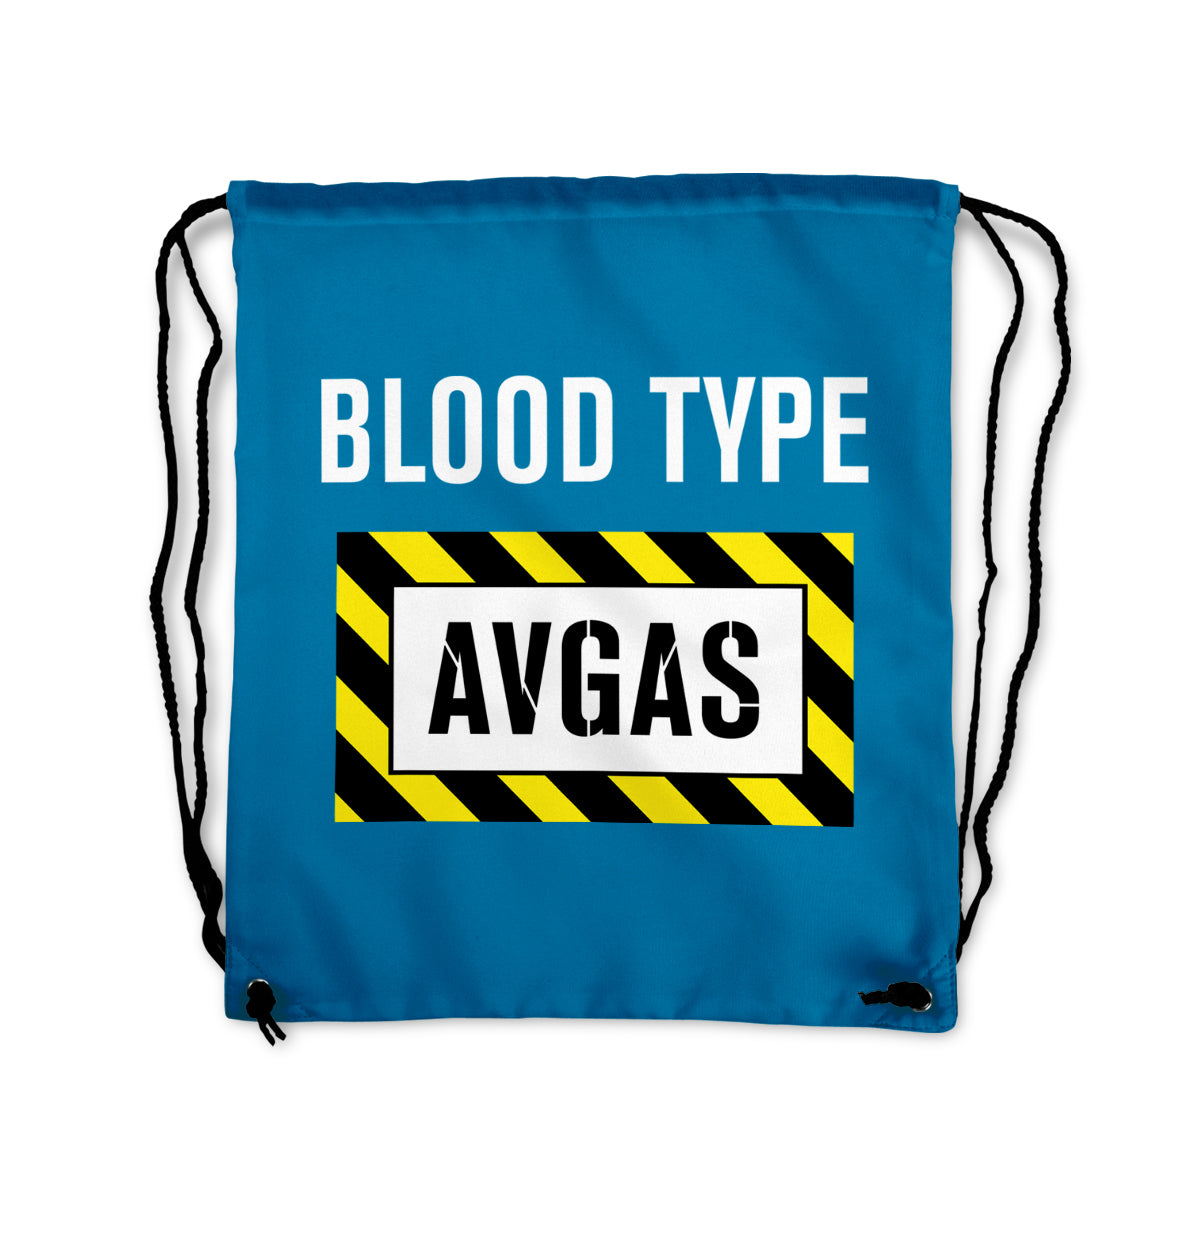 Blood Type AVGAS Designed Drawstring Bags